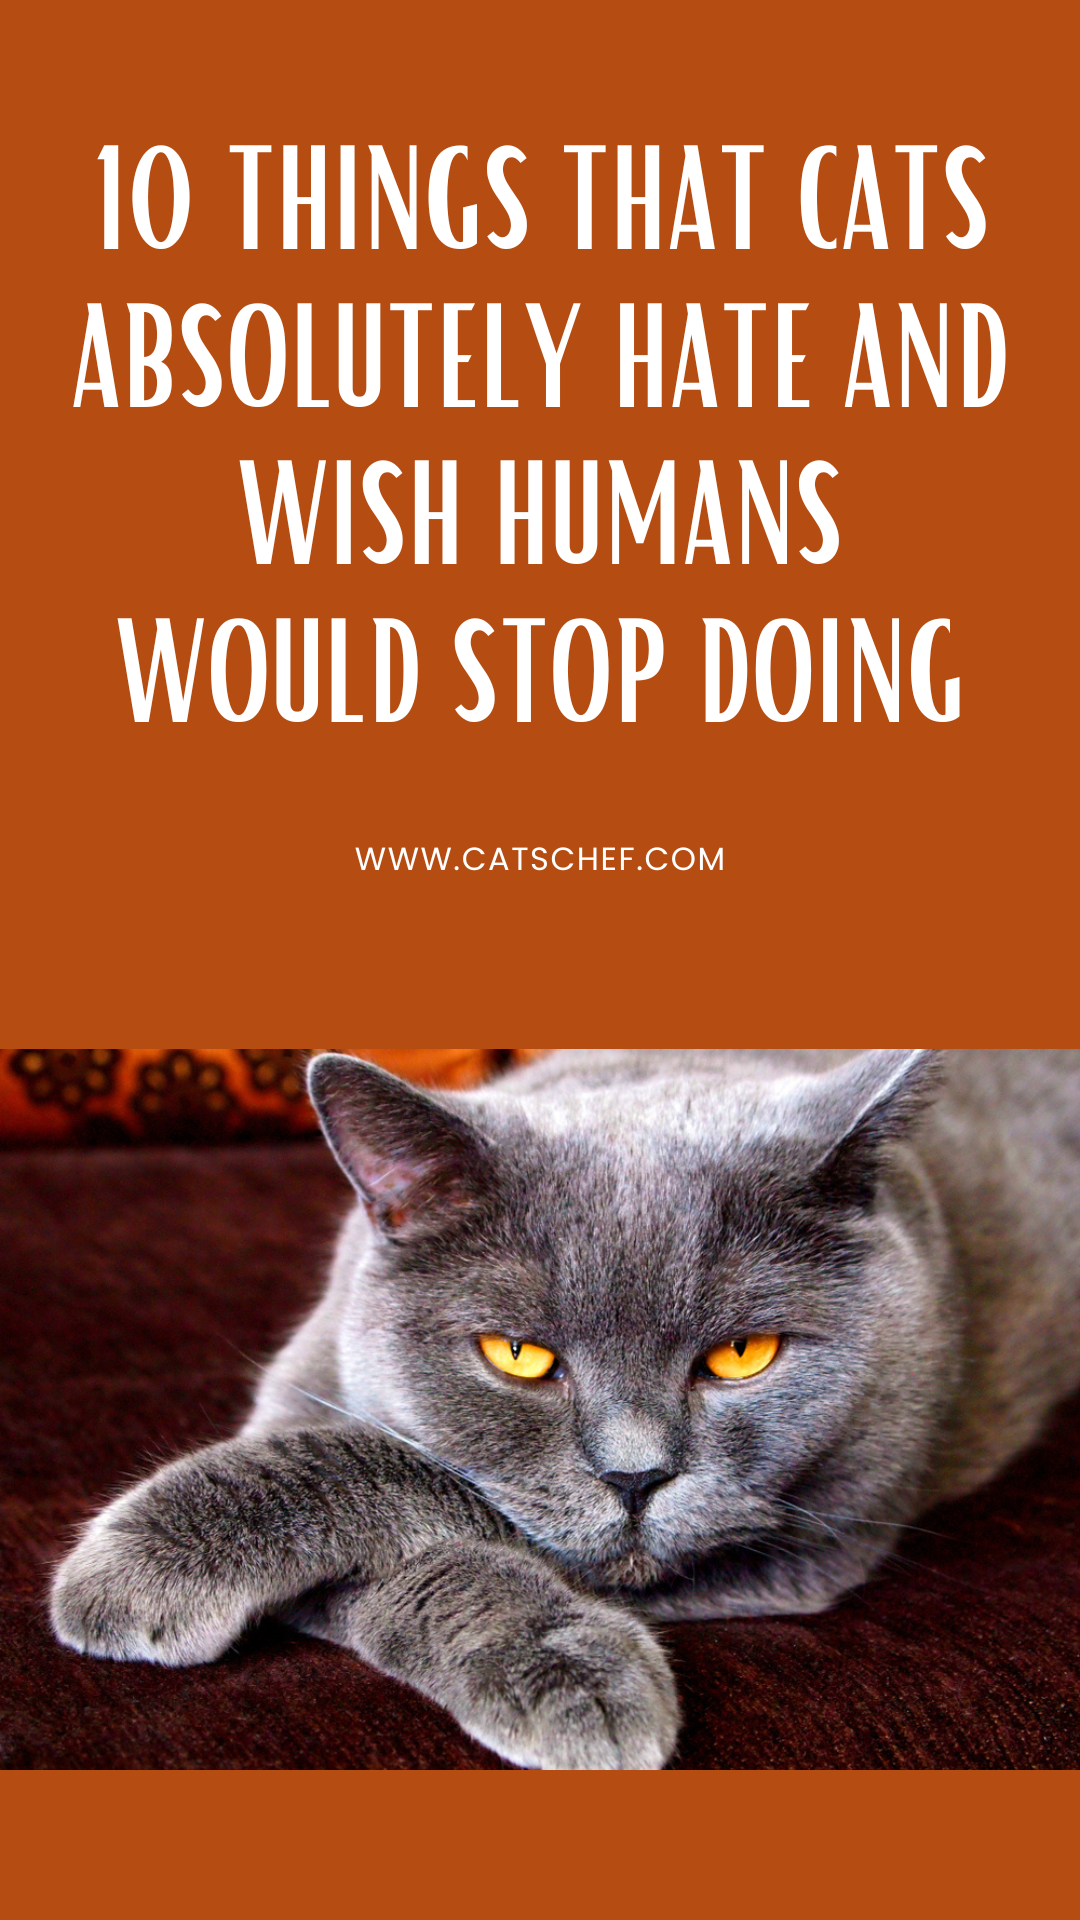 Kedilerin Kesinlikle Nefret Ettiği ve İnsanların Yapmaktan Vazgeçmesini Dilediği 10 Şey